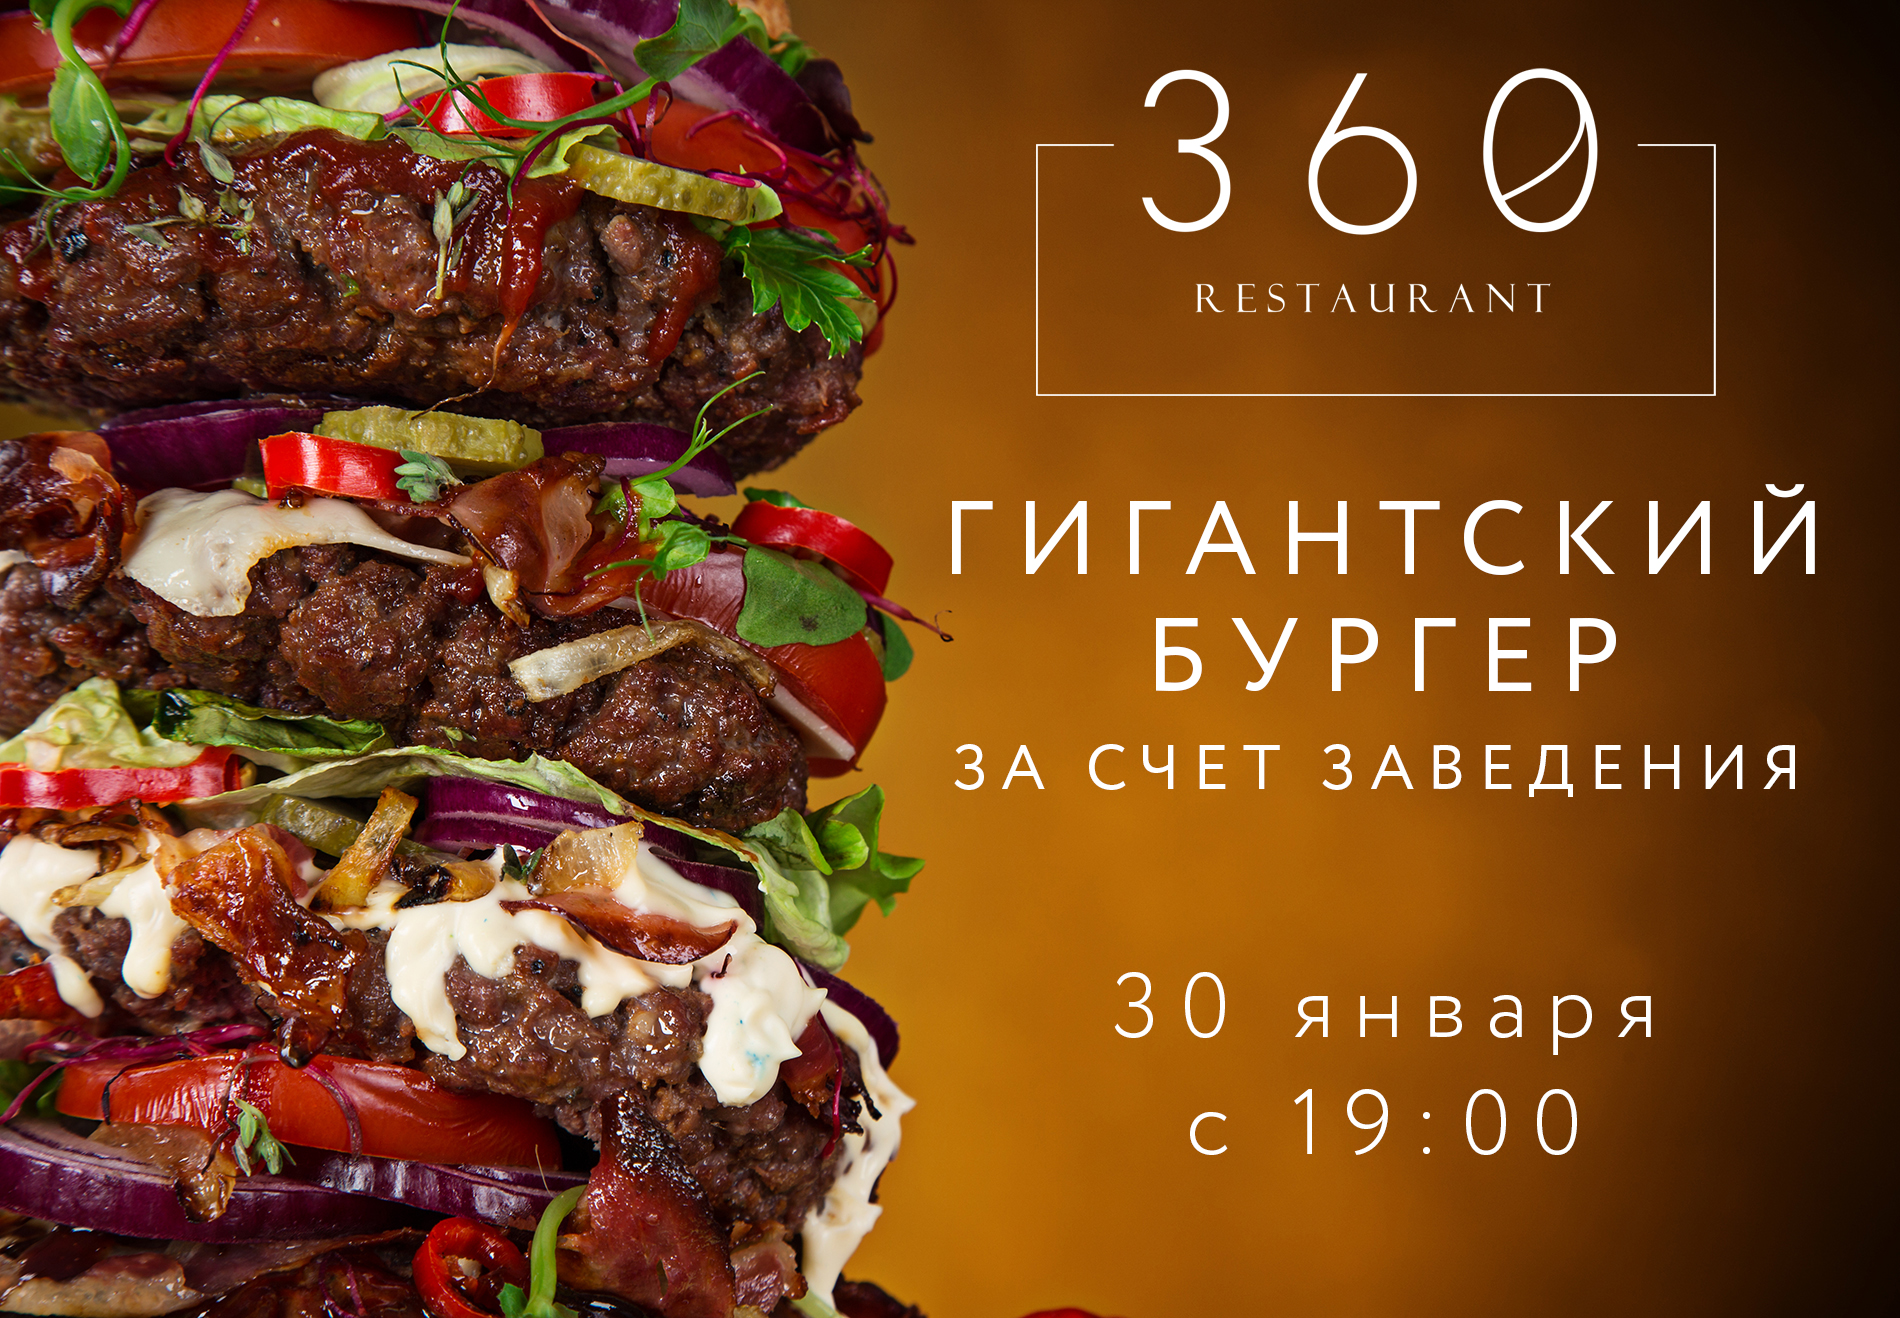 Ресторанный сервис бронирования столиков menu-rest.com - Интерьер ресторана "360"